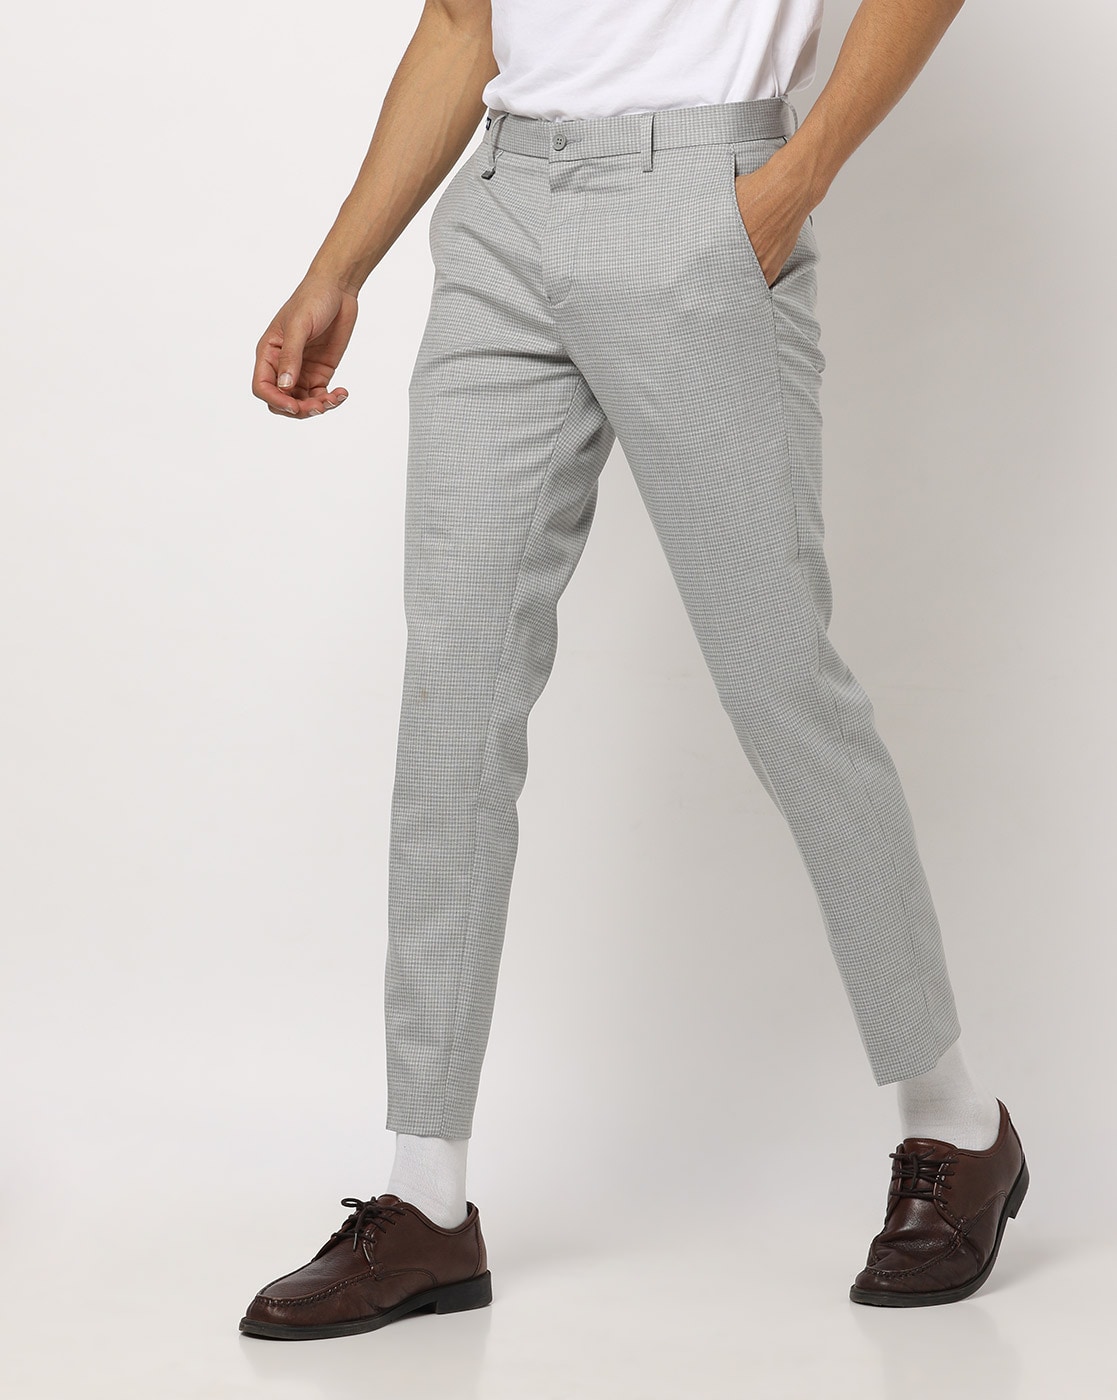 Buy Van Heusen Grey Trousers Online  478781  Van Heusen